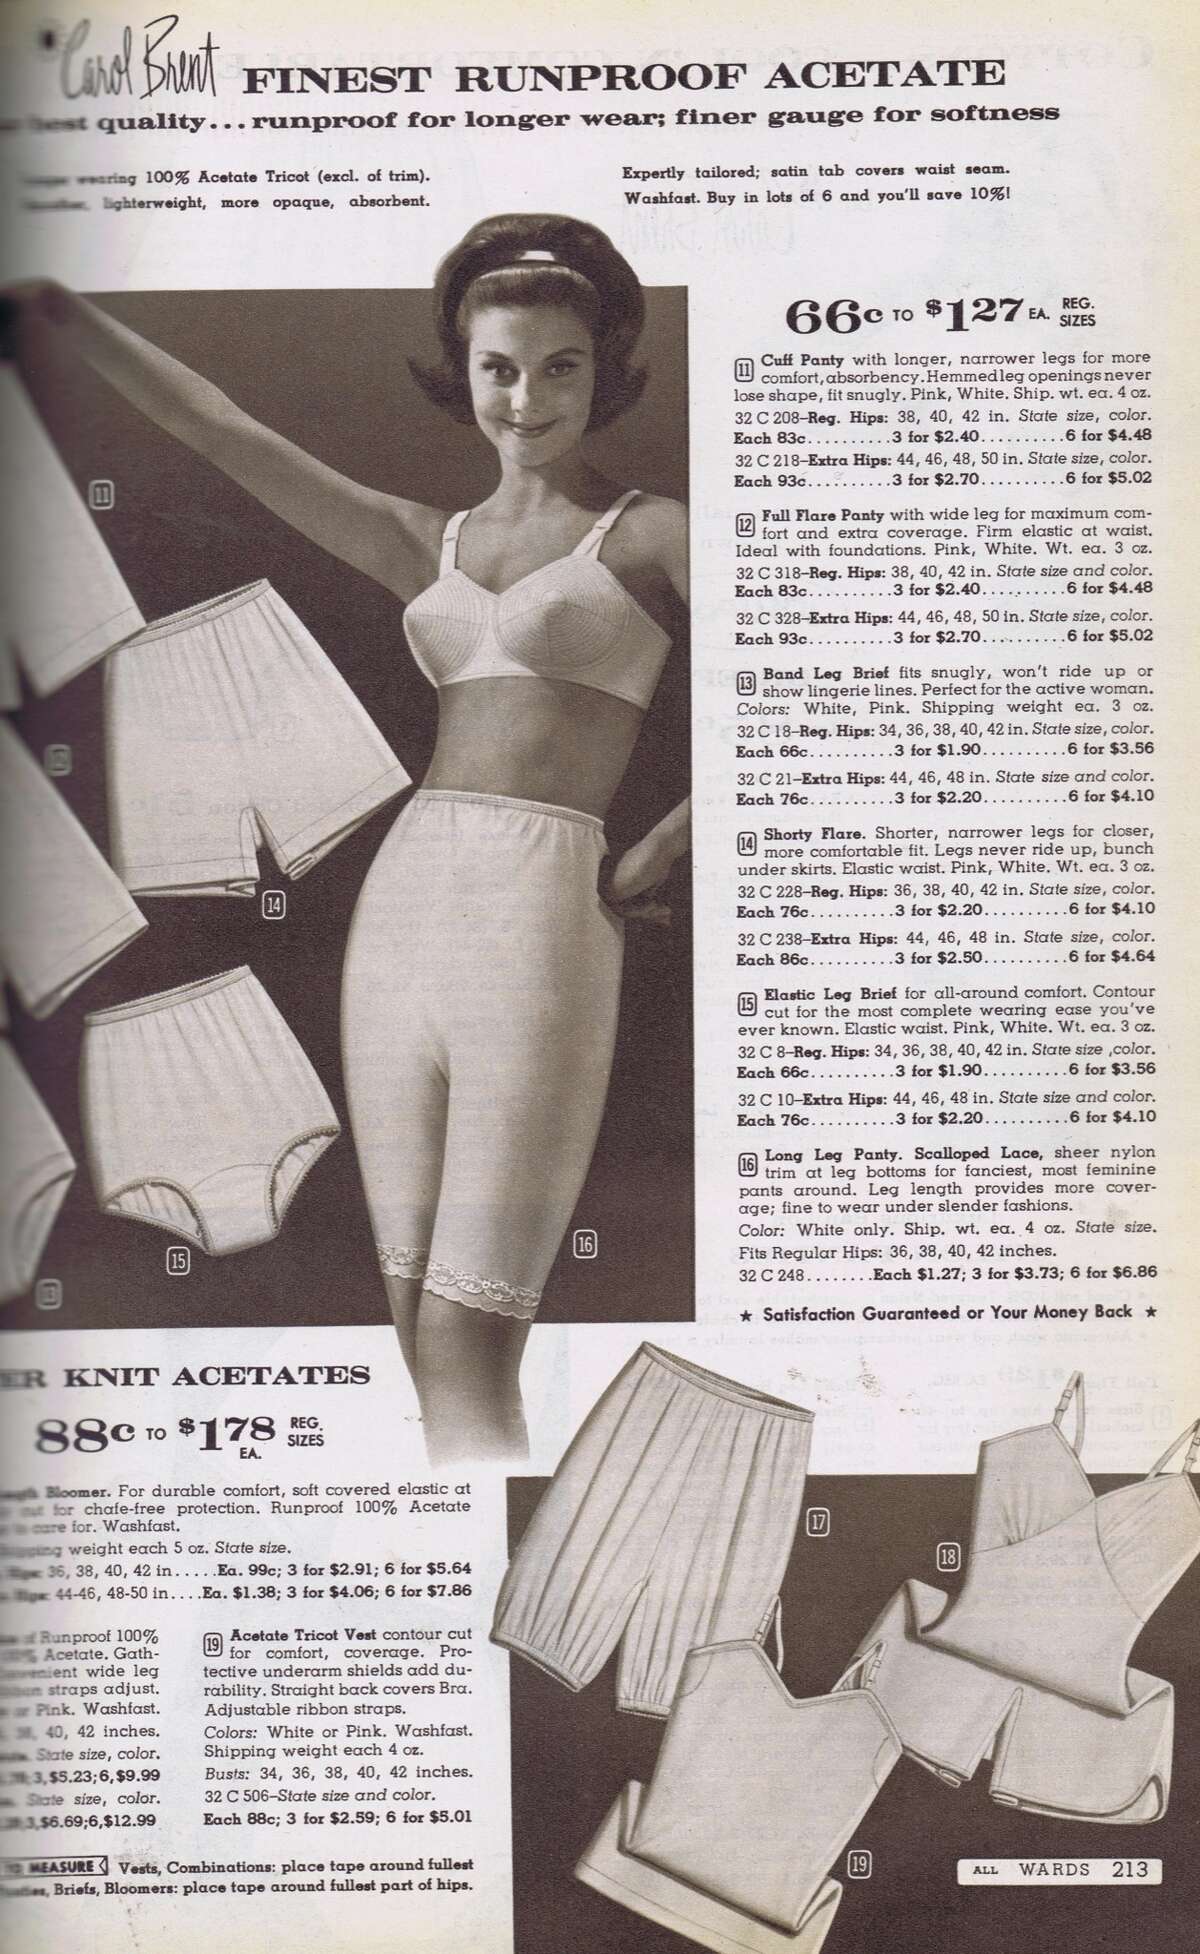 Catalog porn - Underwear ads through the 20th century